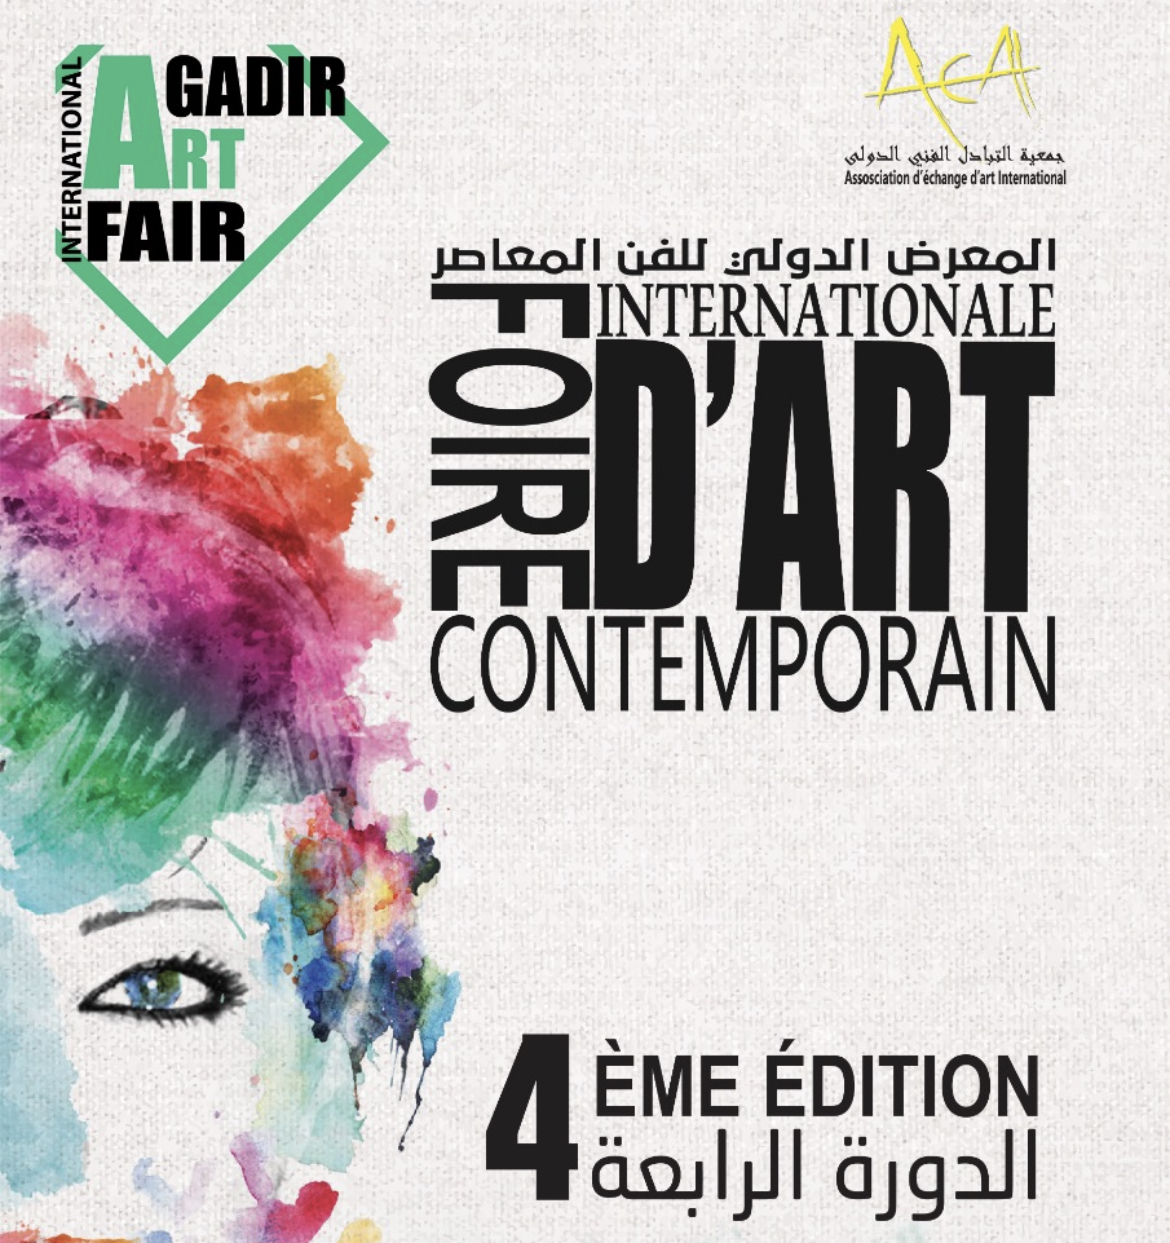 ملصق الدورة الرابعة للمعرض الدولي للفن المعاصر (أغادير آرت فير)